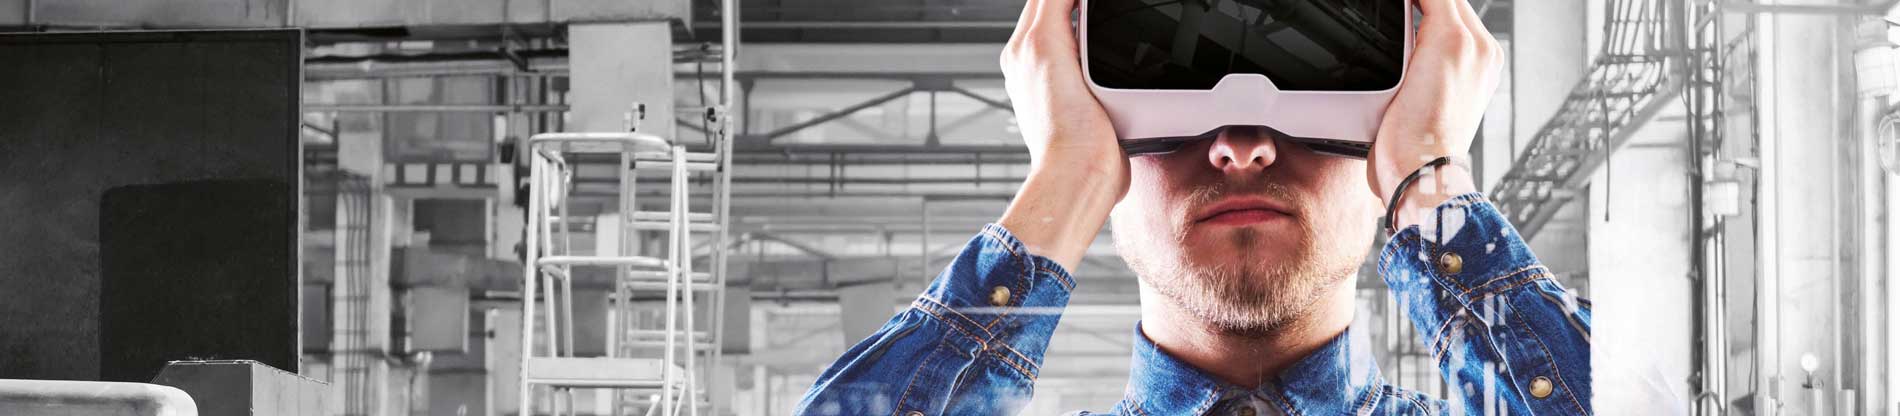 Mann mit VR-Brille als Beispiel eines Systemtechnik-Produkts